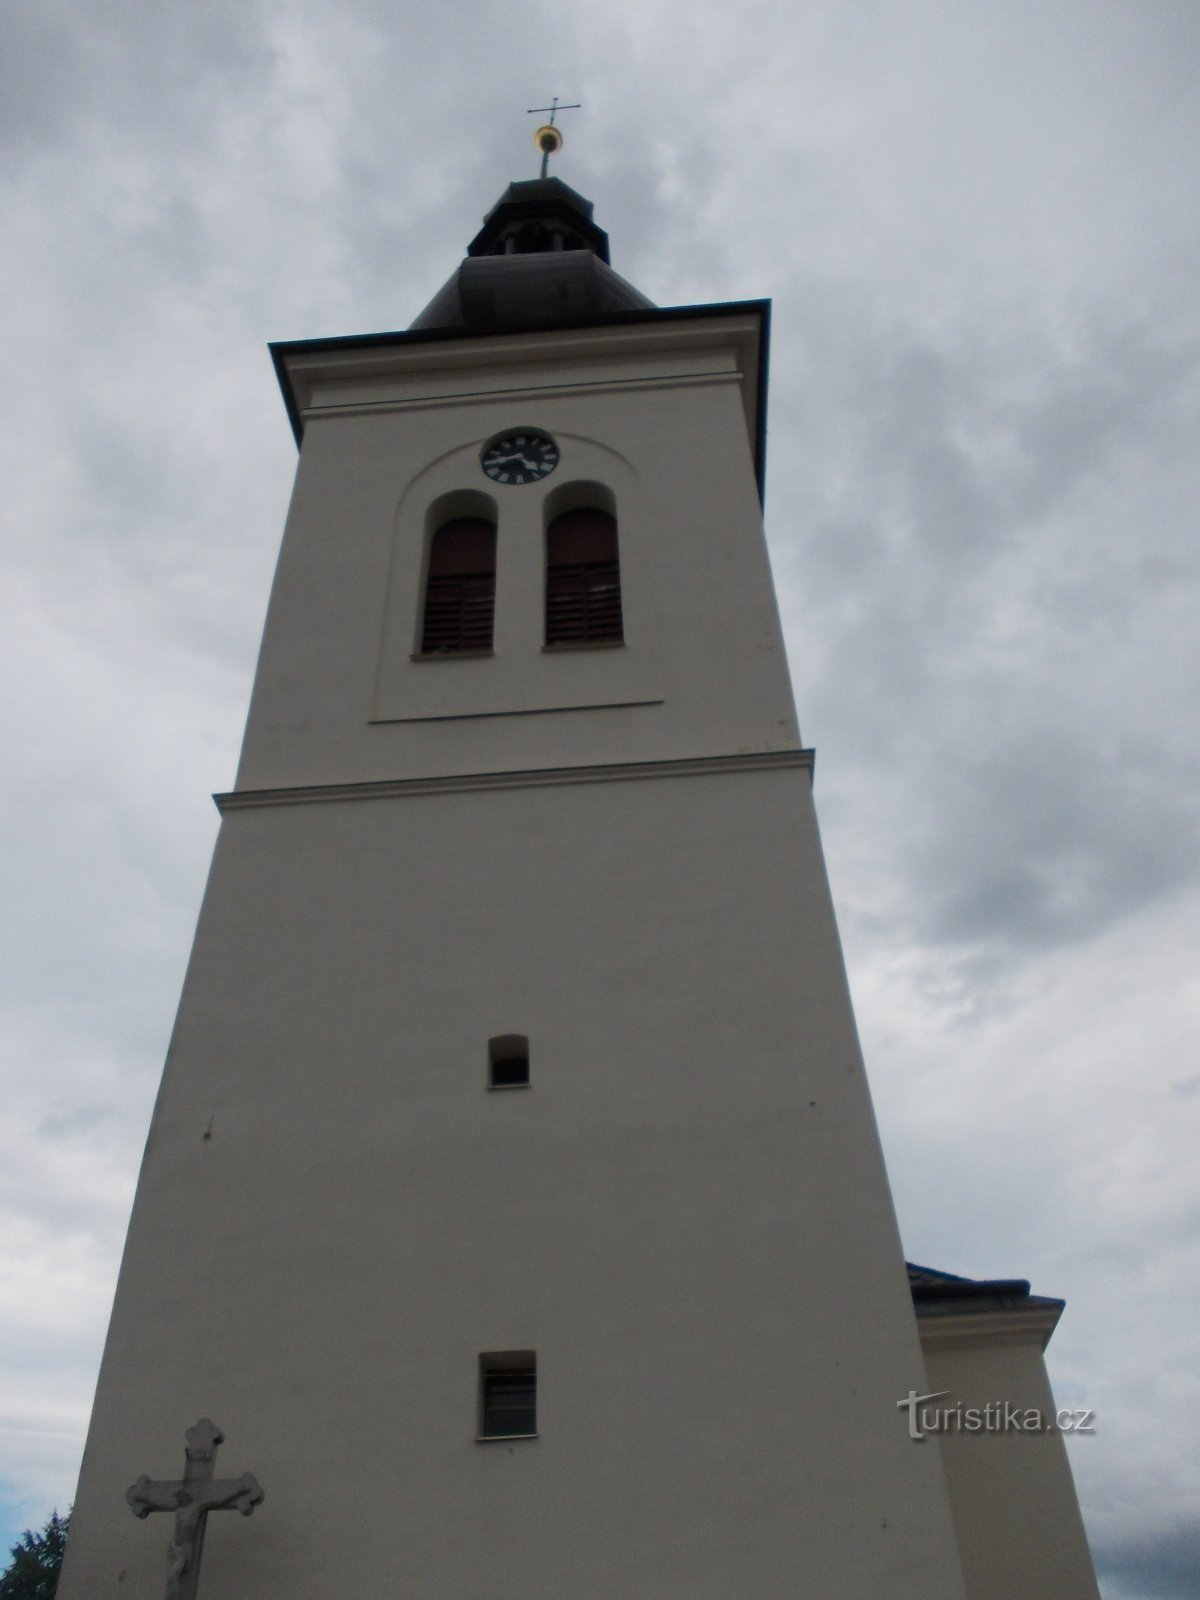 kerktoren